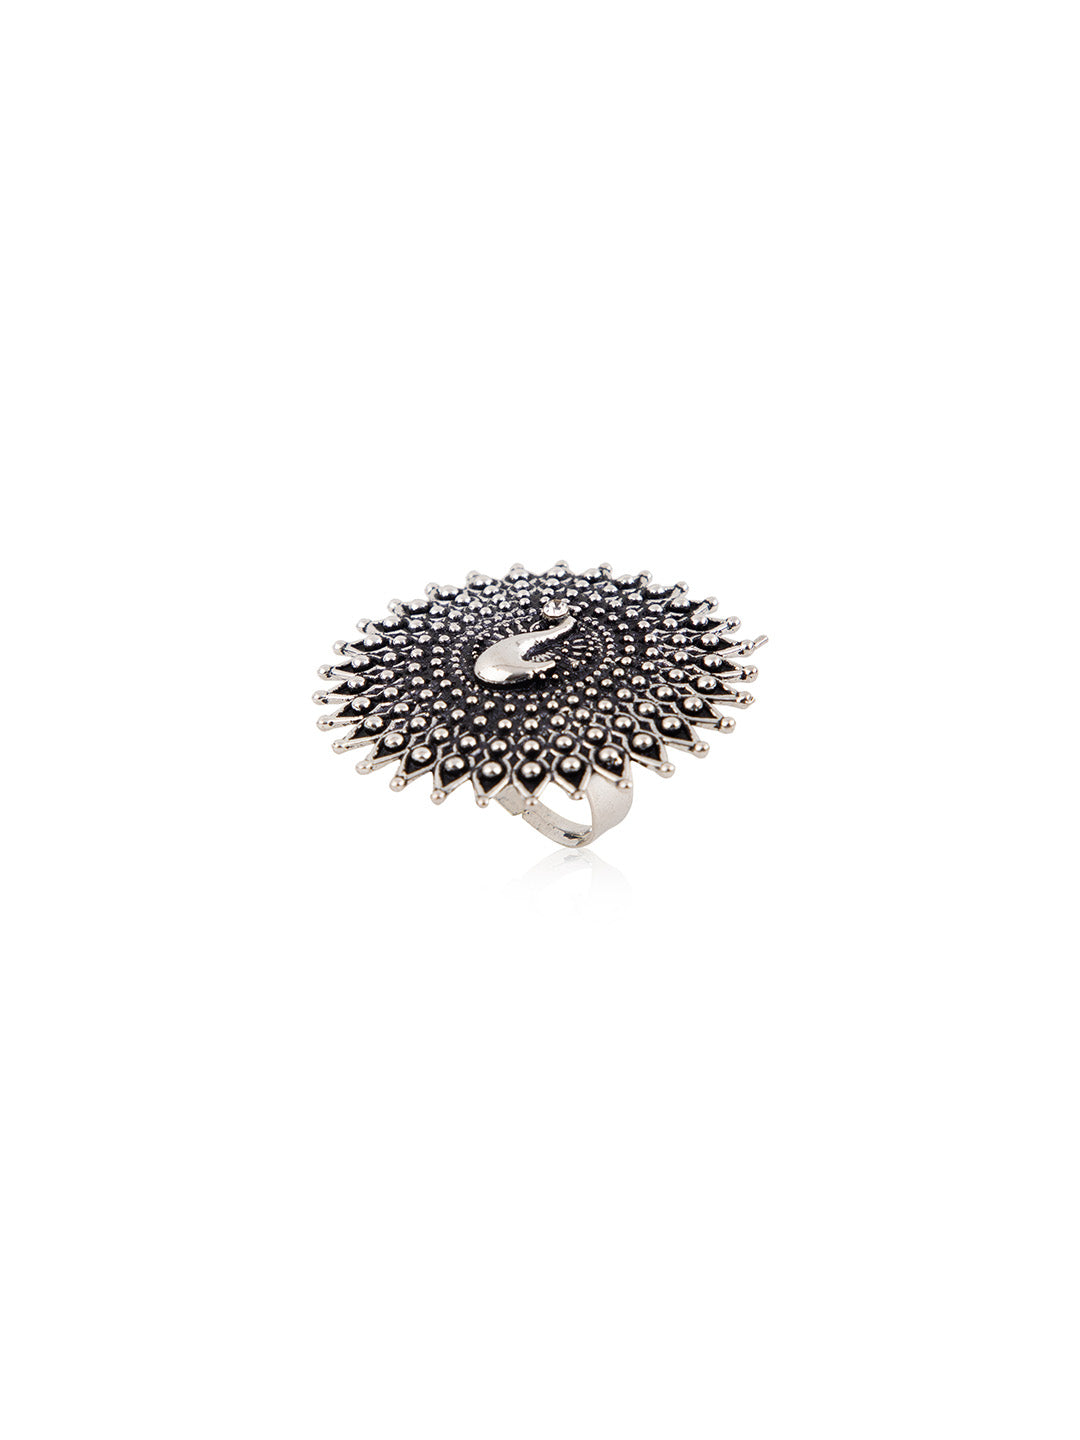 Priyaasi Oxidised Silver Plated Dancing Peacock Ring